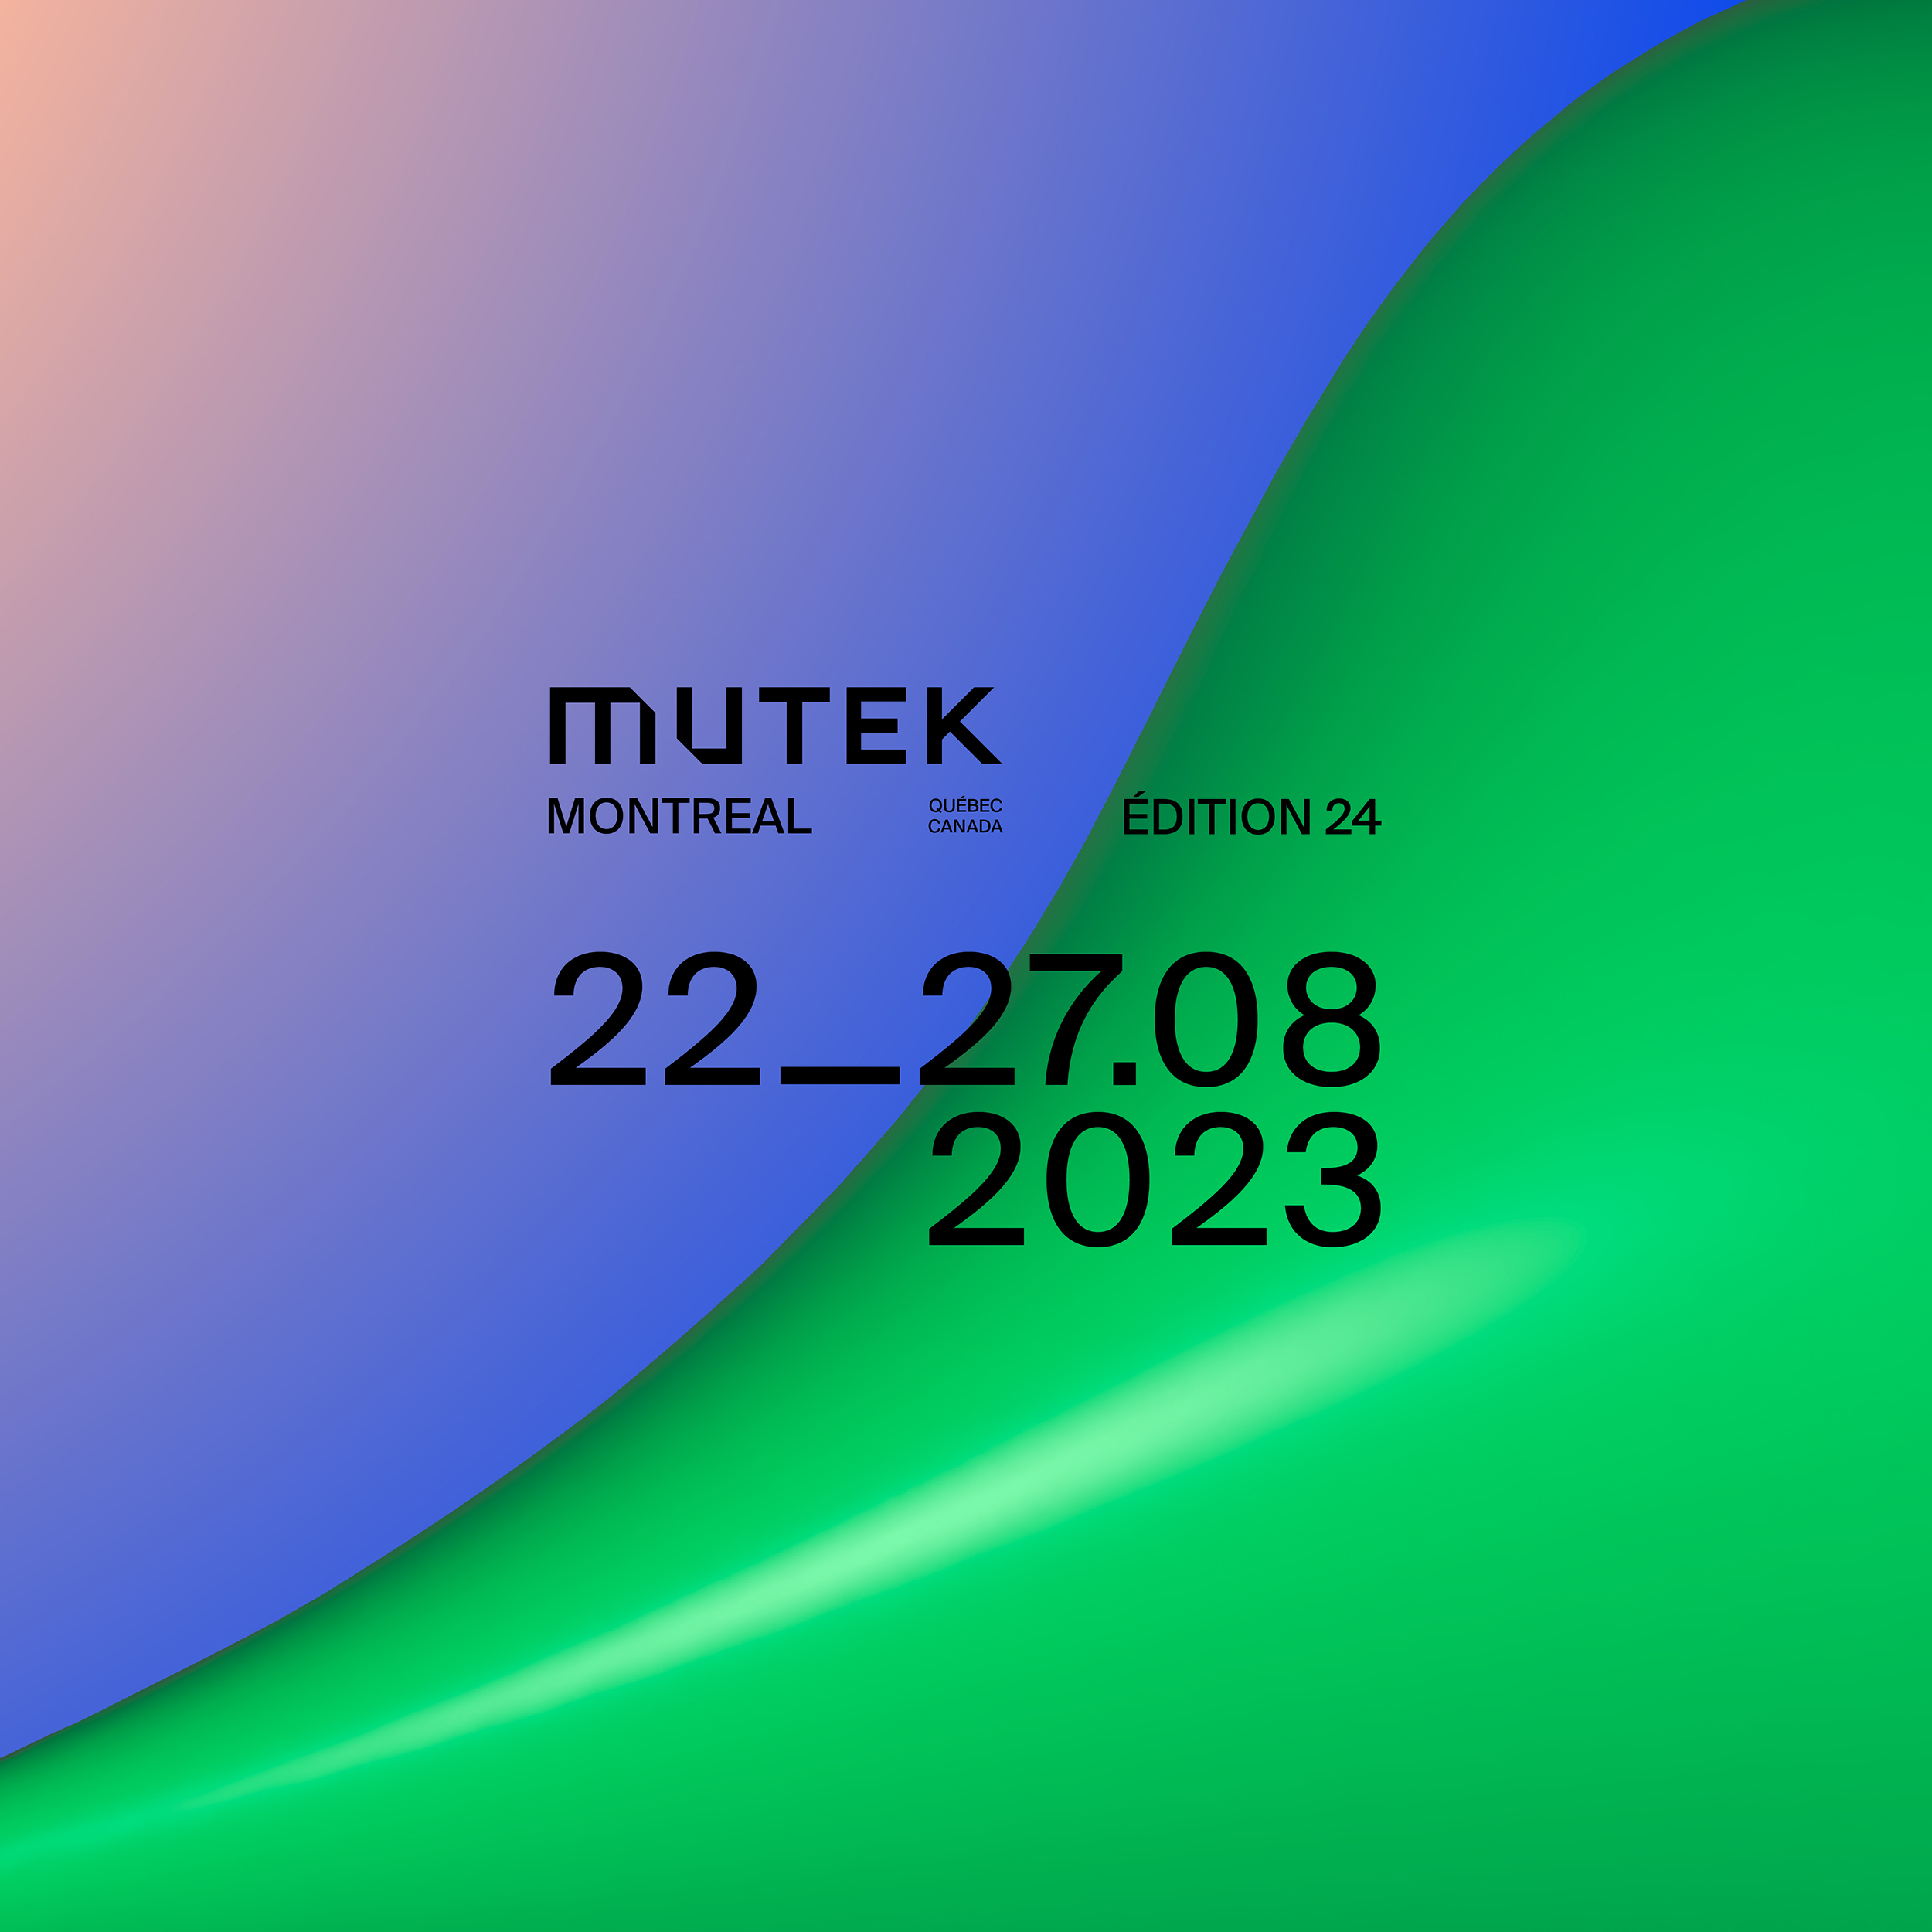 MUTEK MTL 2023 first announcement